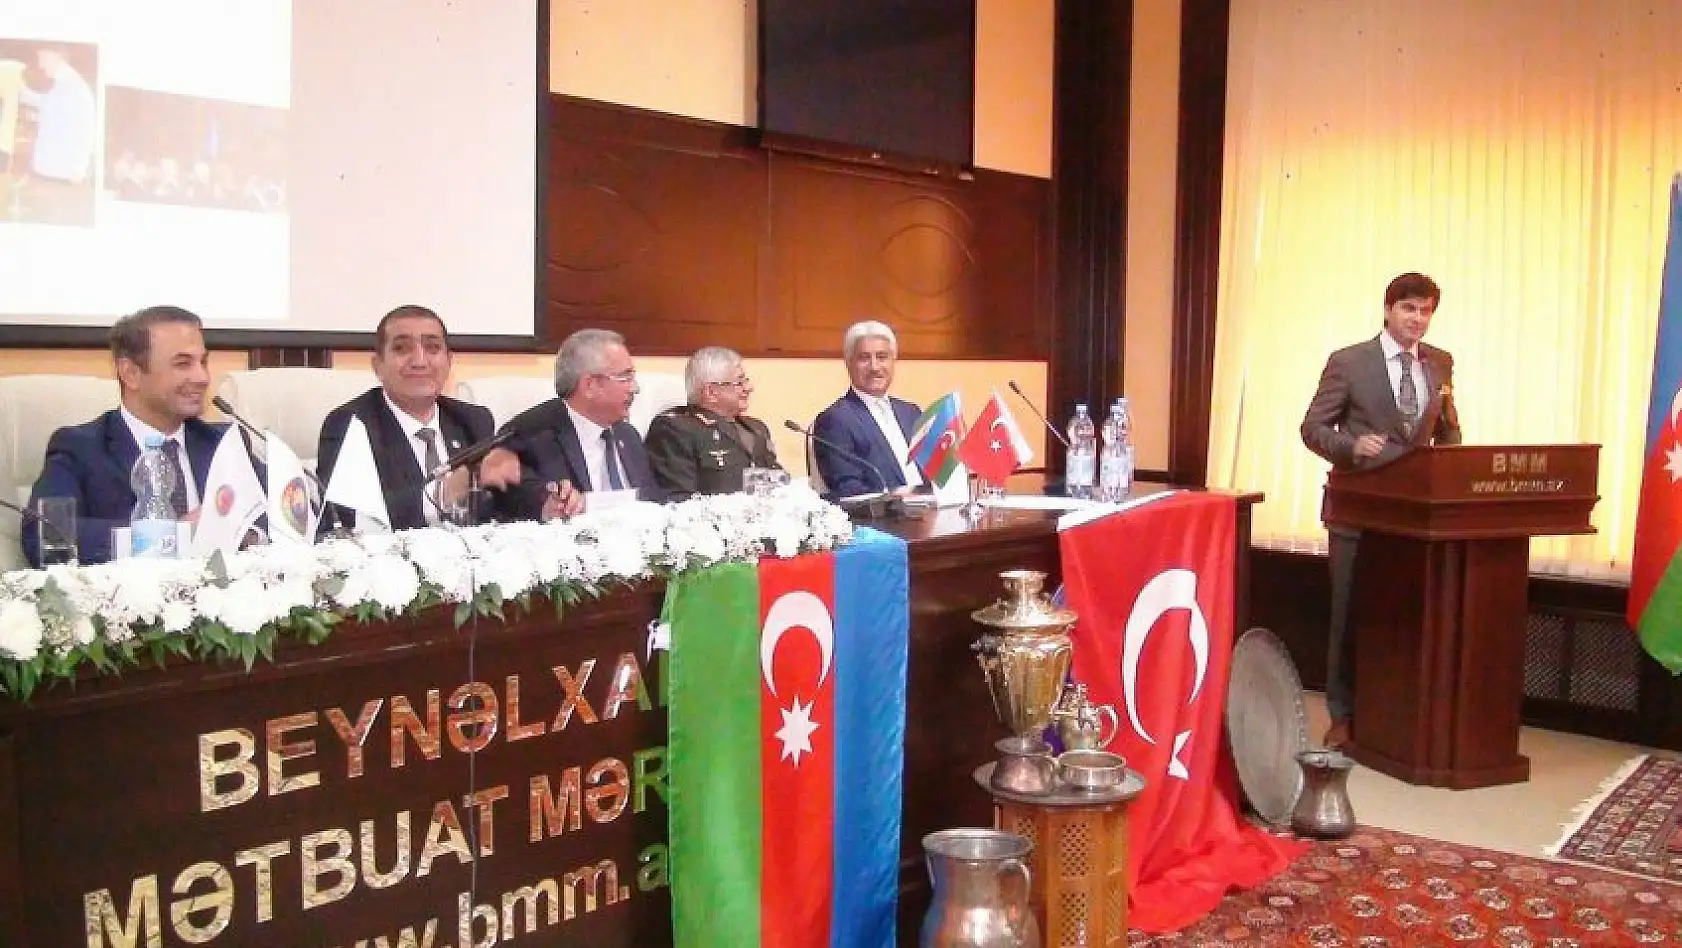 İsmet Taymuş Azerbaycan'da yönetime seçildi